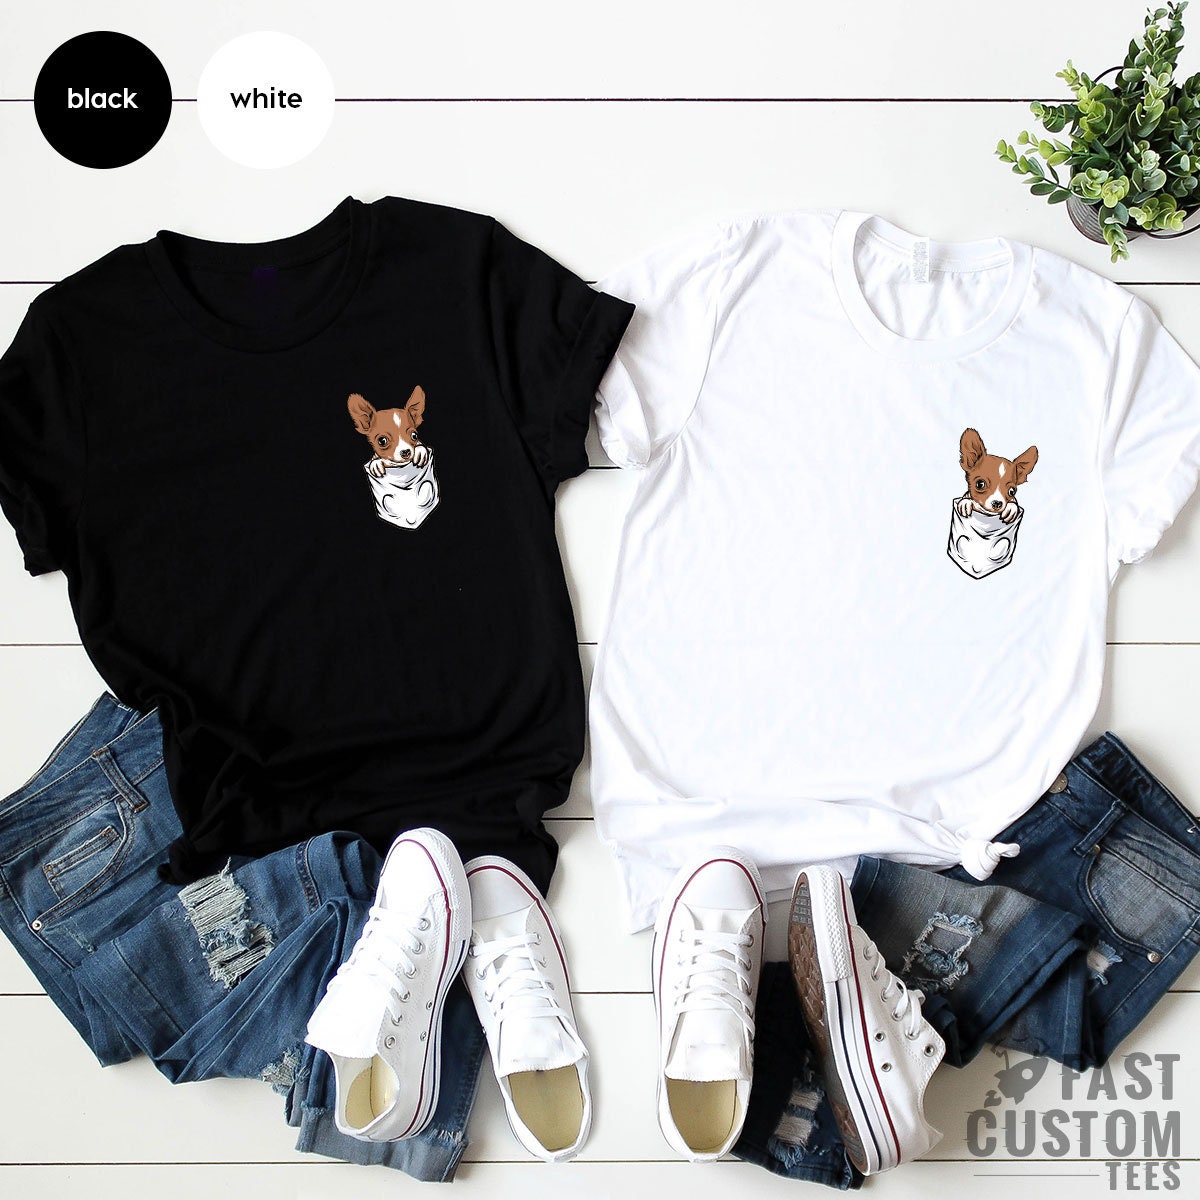 Funny Chihuahua Shirt, Dog Mom Pocket Shirt, Cute Chihuahua T Shirt, Dog Lover TShirt, Shirts for Her, Gifts for Dog Lovers, Chihuahua Shirt - Fastdeliverytees.com